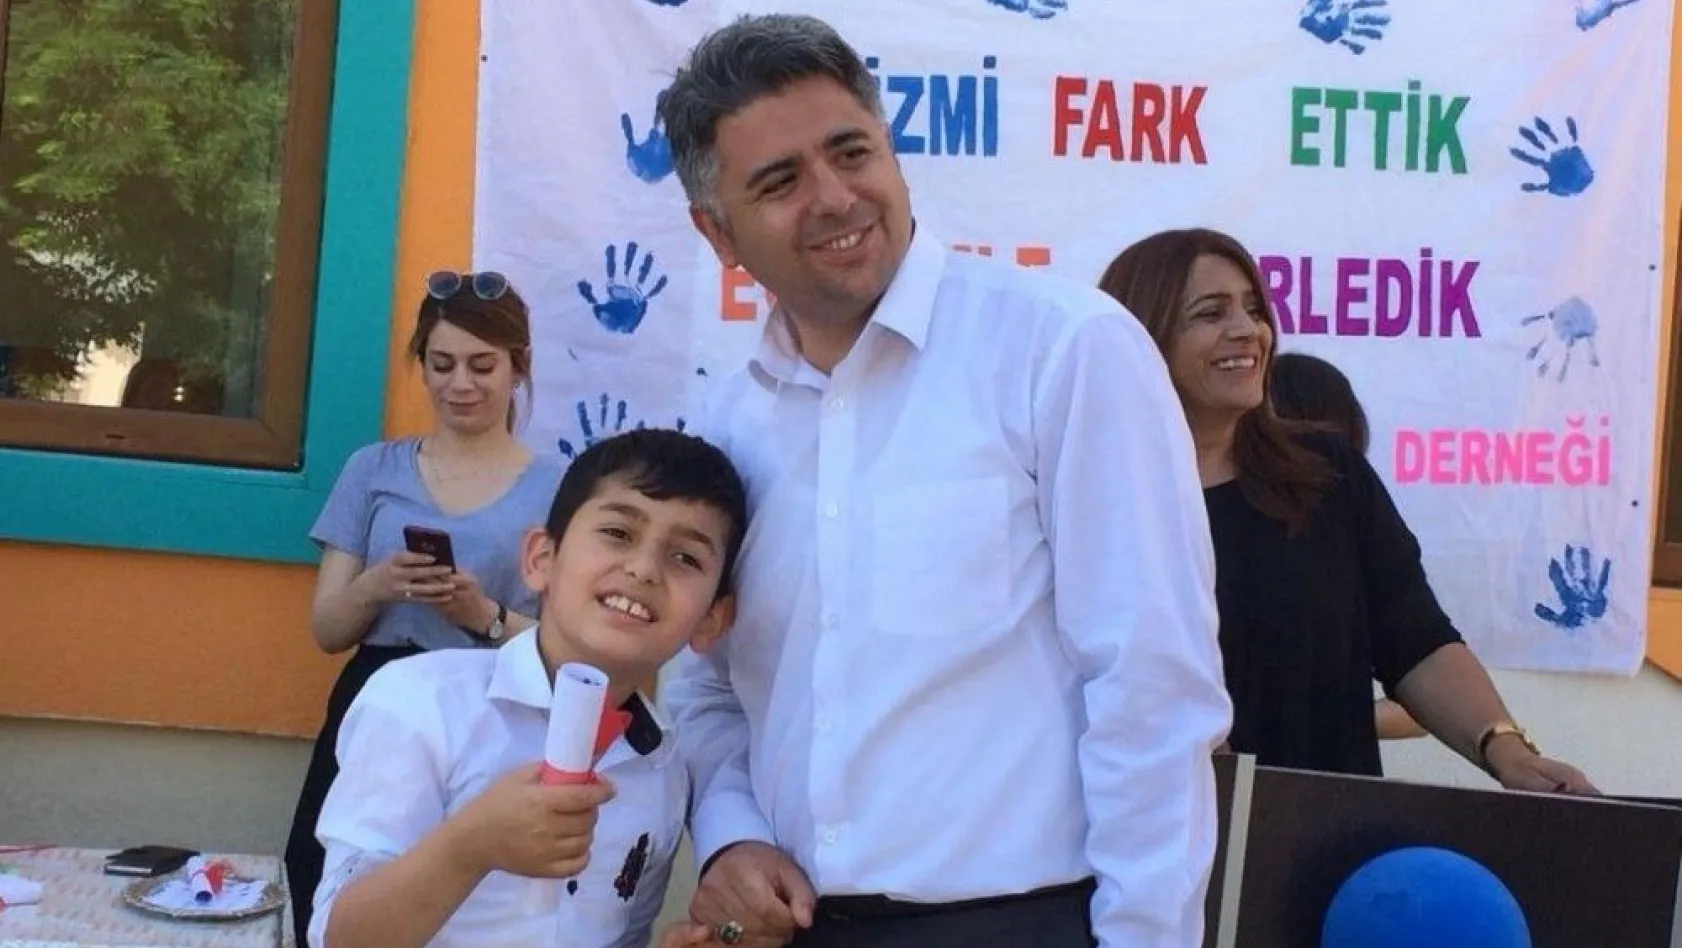 Tunceli'de otizmli çocuklar için etkinlik
